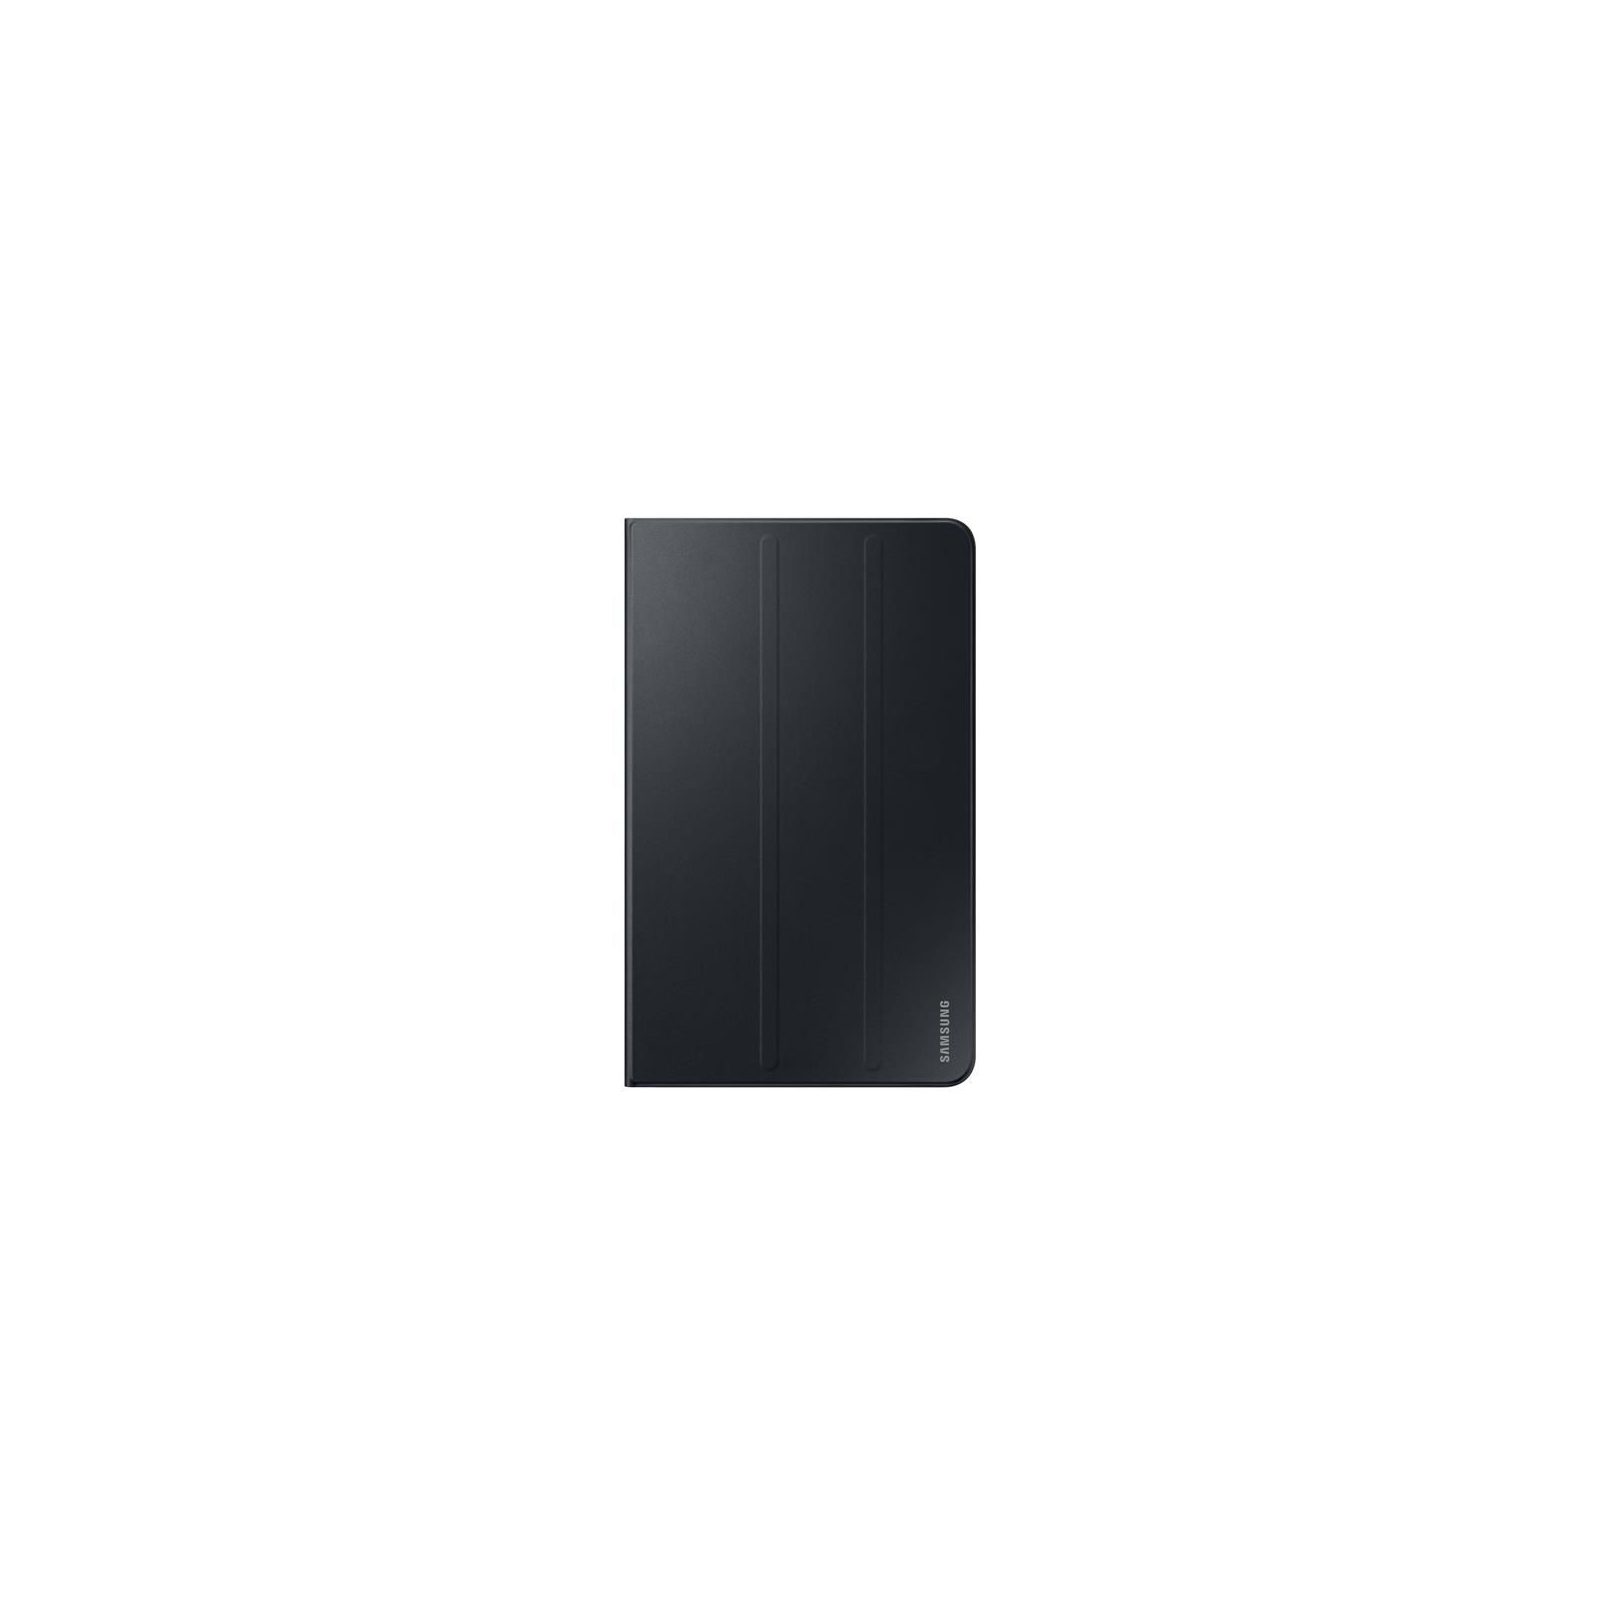 Чехол для планшета Samsung 10.1" Galaxy Tab A 10.1 LTE T585 Book Cover Black (EF-BT580PBEGRU)